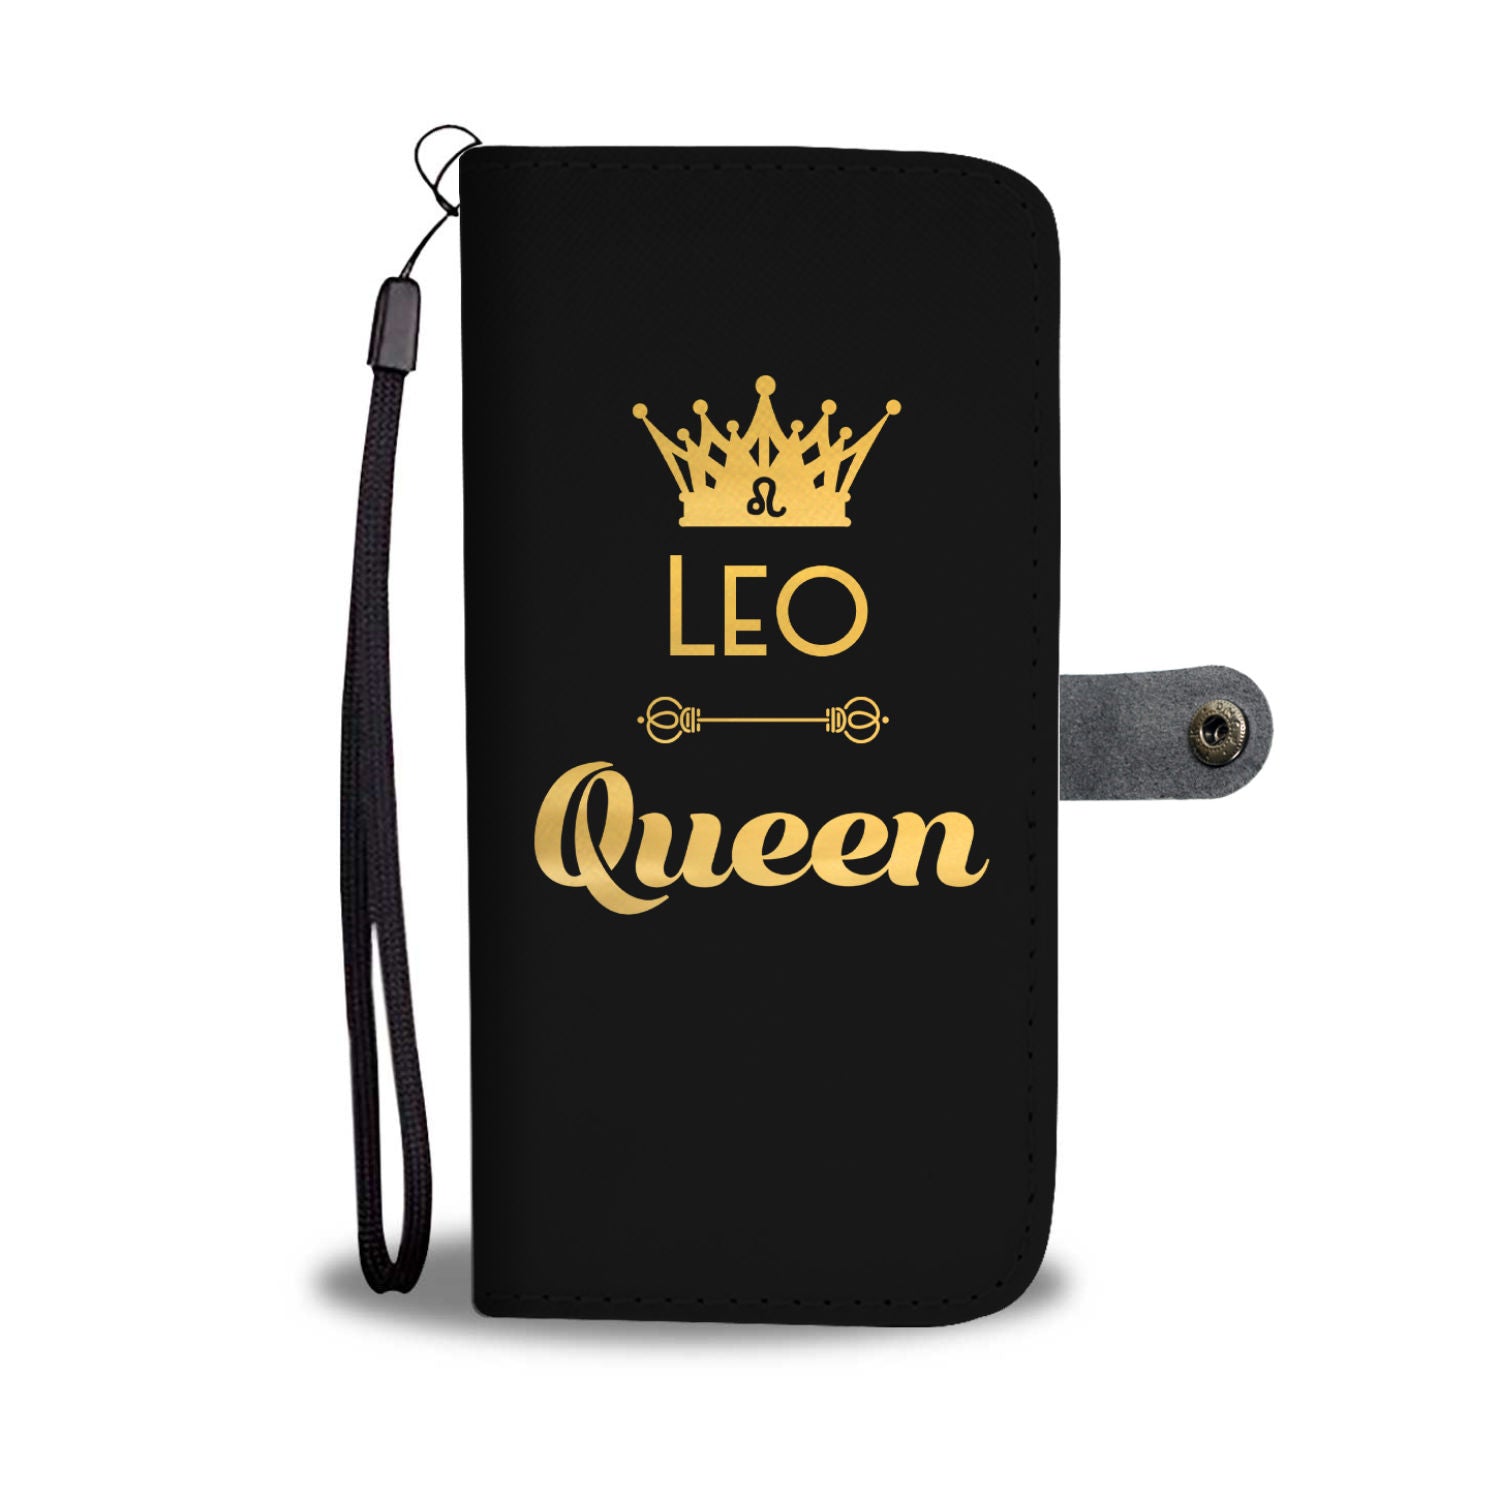 Leo Queen Phone Wallet